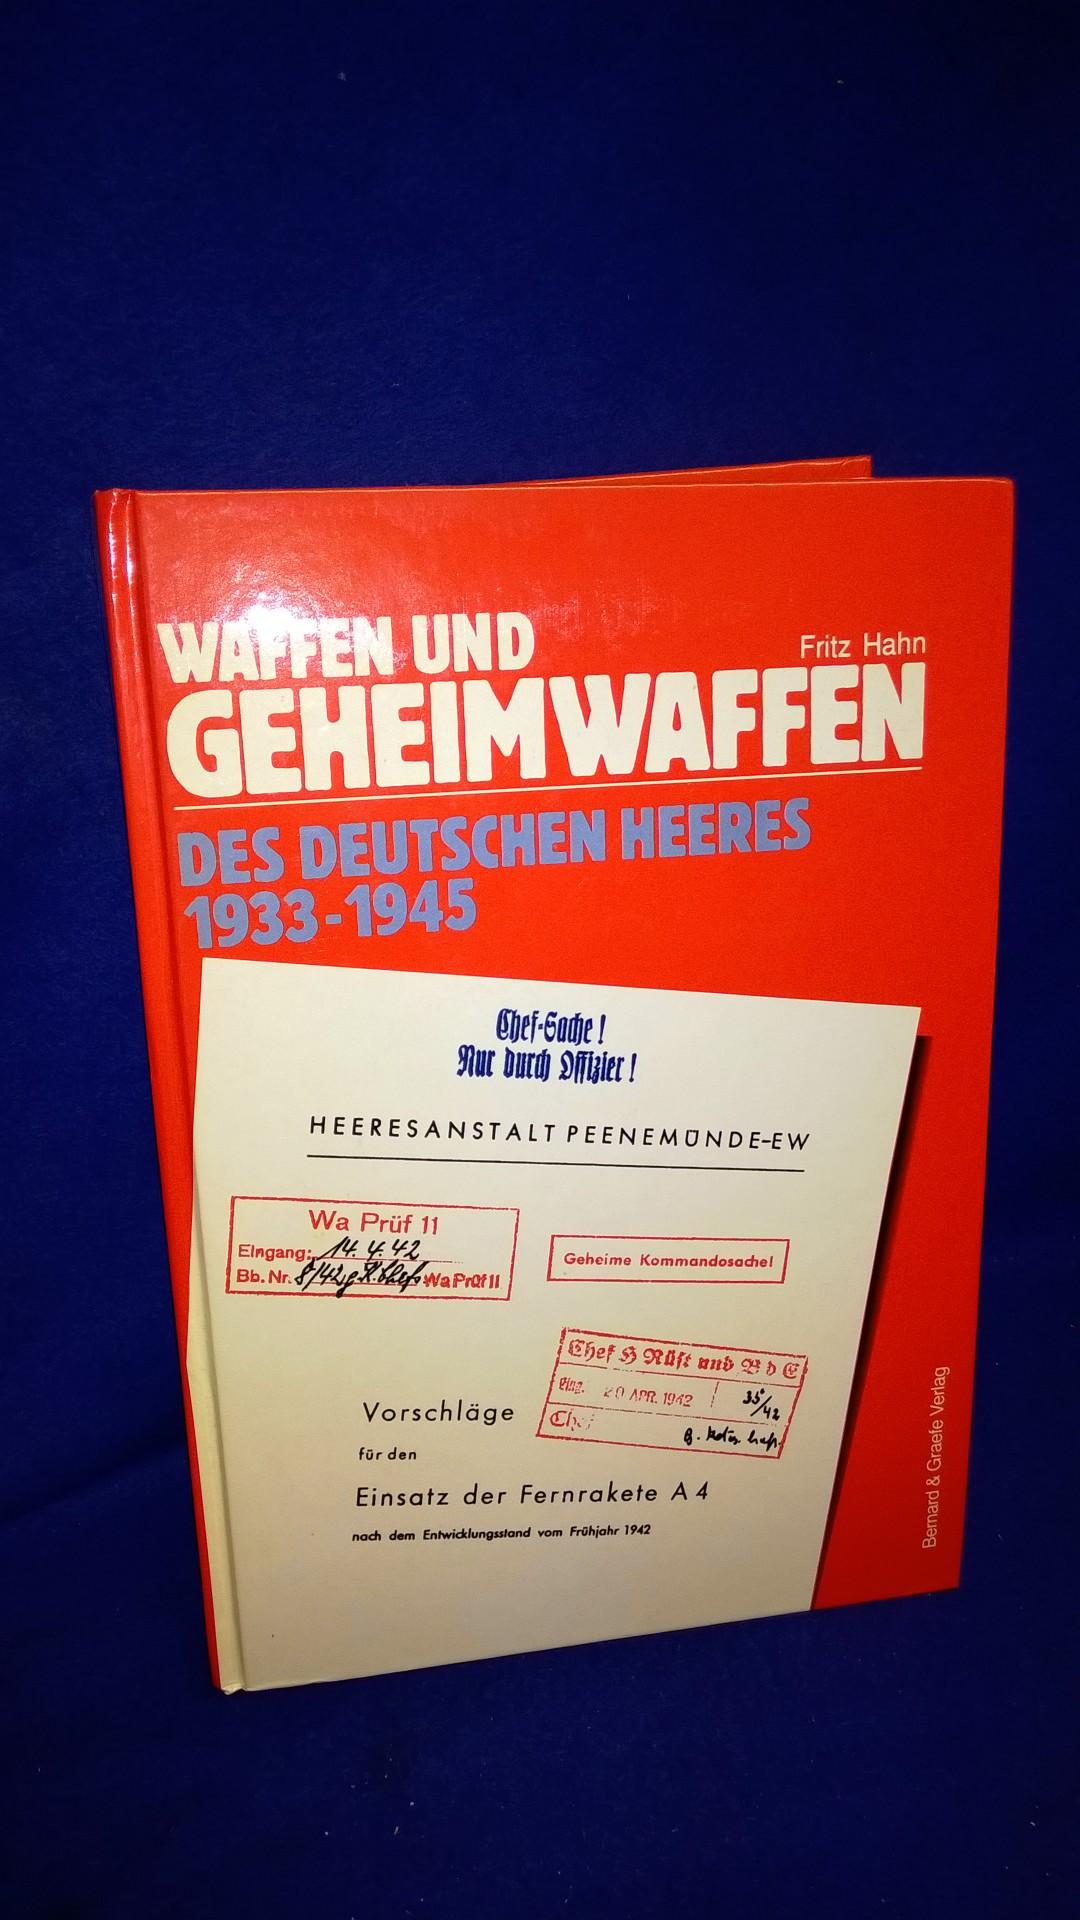 Waffen und Geheimwaffen des deutschen Heeres 1933-1945. Band 1 + 2 in einem Band. Großartiges und sehr detailliertes Nachschlagewerk!